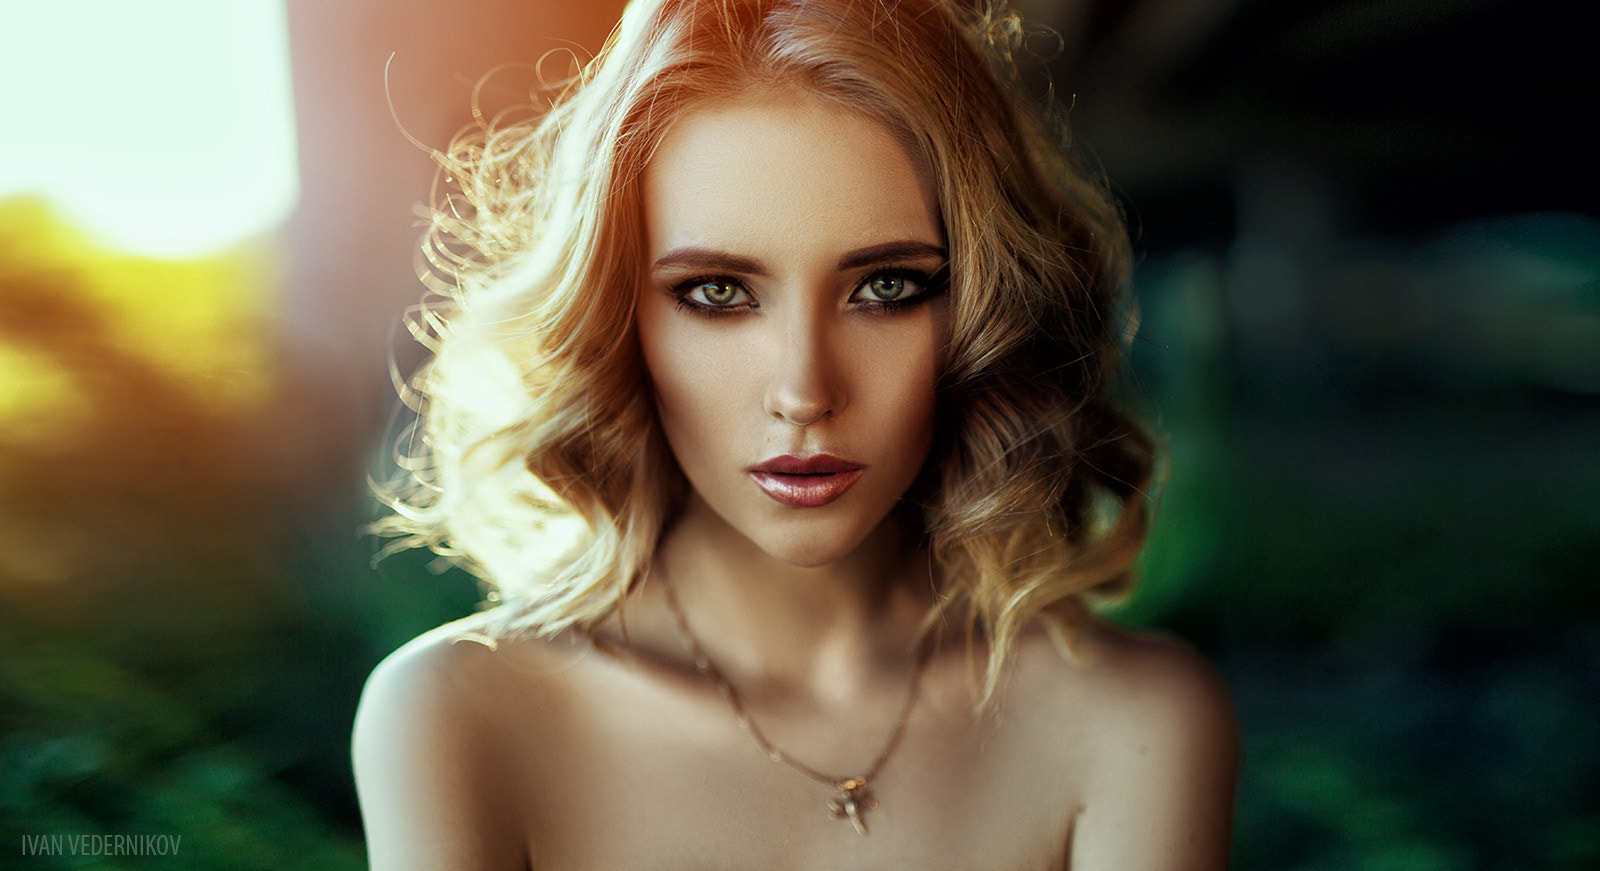 Ivan Vedernikov Women Blonde Shoulder Length Hair Wavy Hair Green Eyes Looking At Viewer Make Up Eye 1600x871